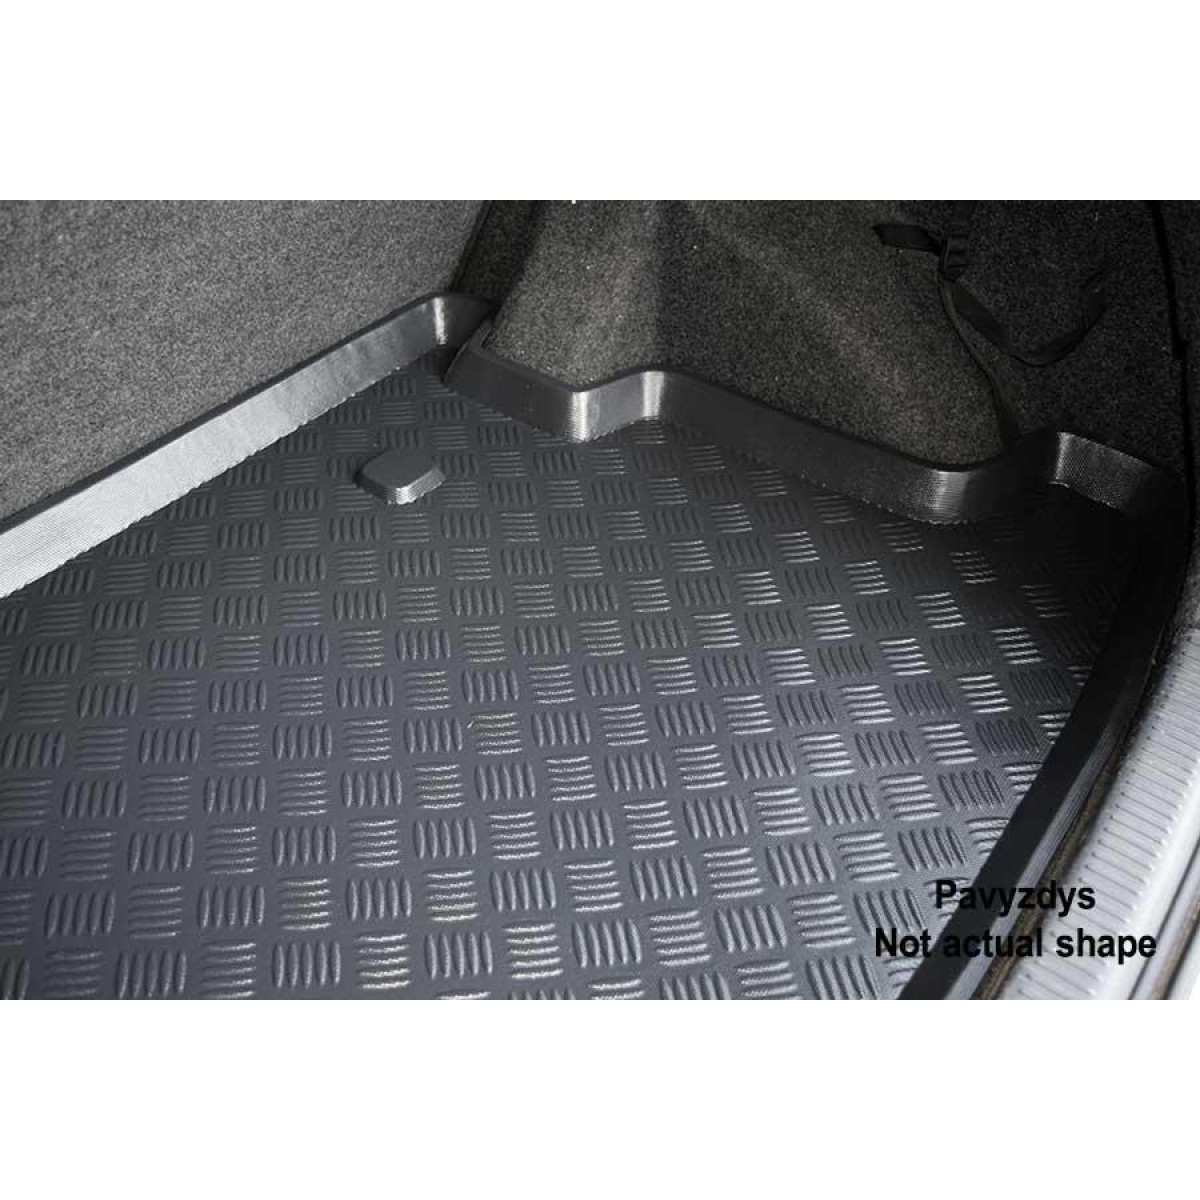 Plastikinis Bagažinės kilimėlis Volkswagen Golf VII hečbekas nuo 2012m. (viršutinis)